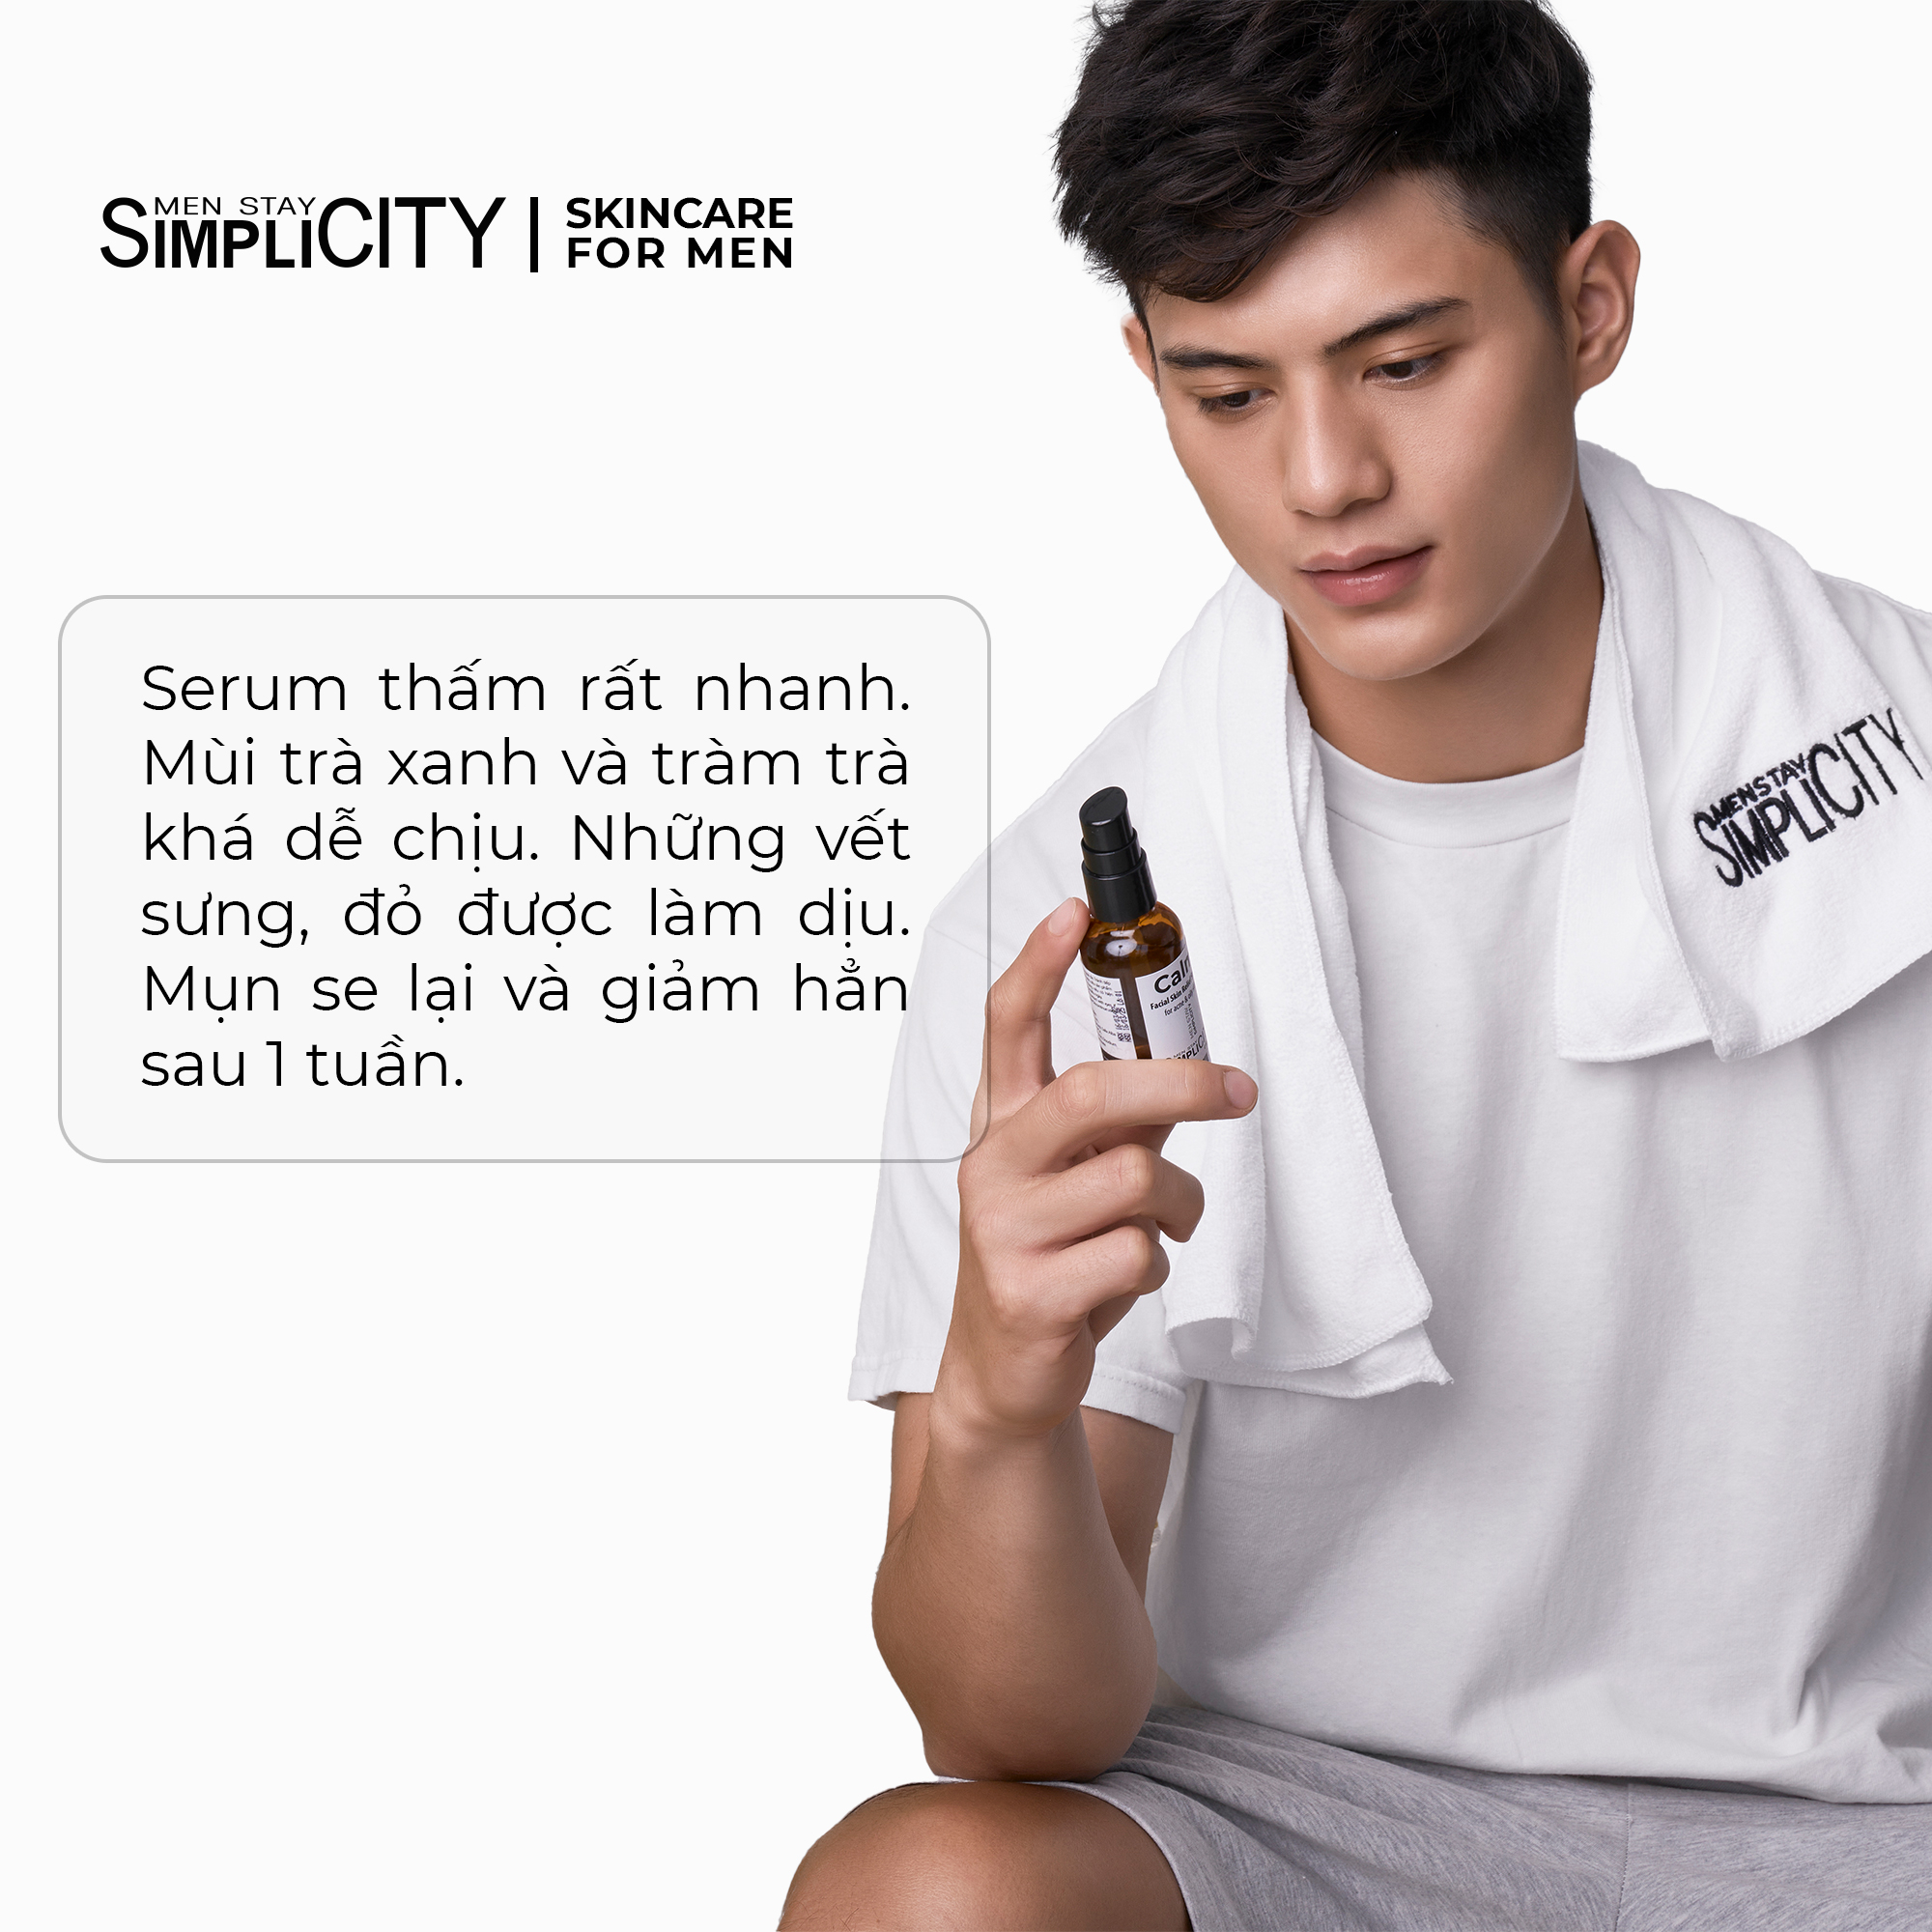 Serum Men Stay Simplicity cho da mụn giúp làm dịu, khô cồi cho nam Calm Skin Relief Facial Serum 30ml